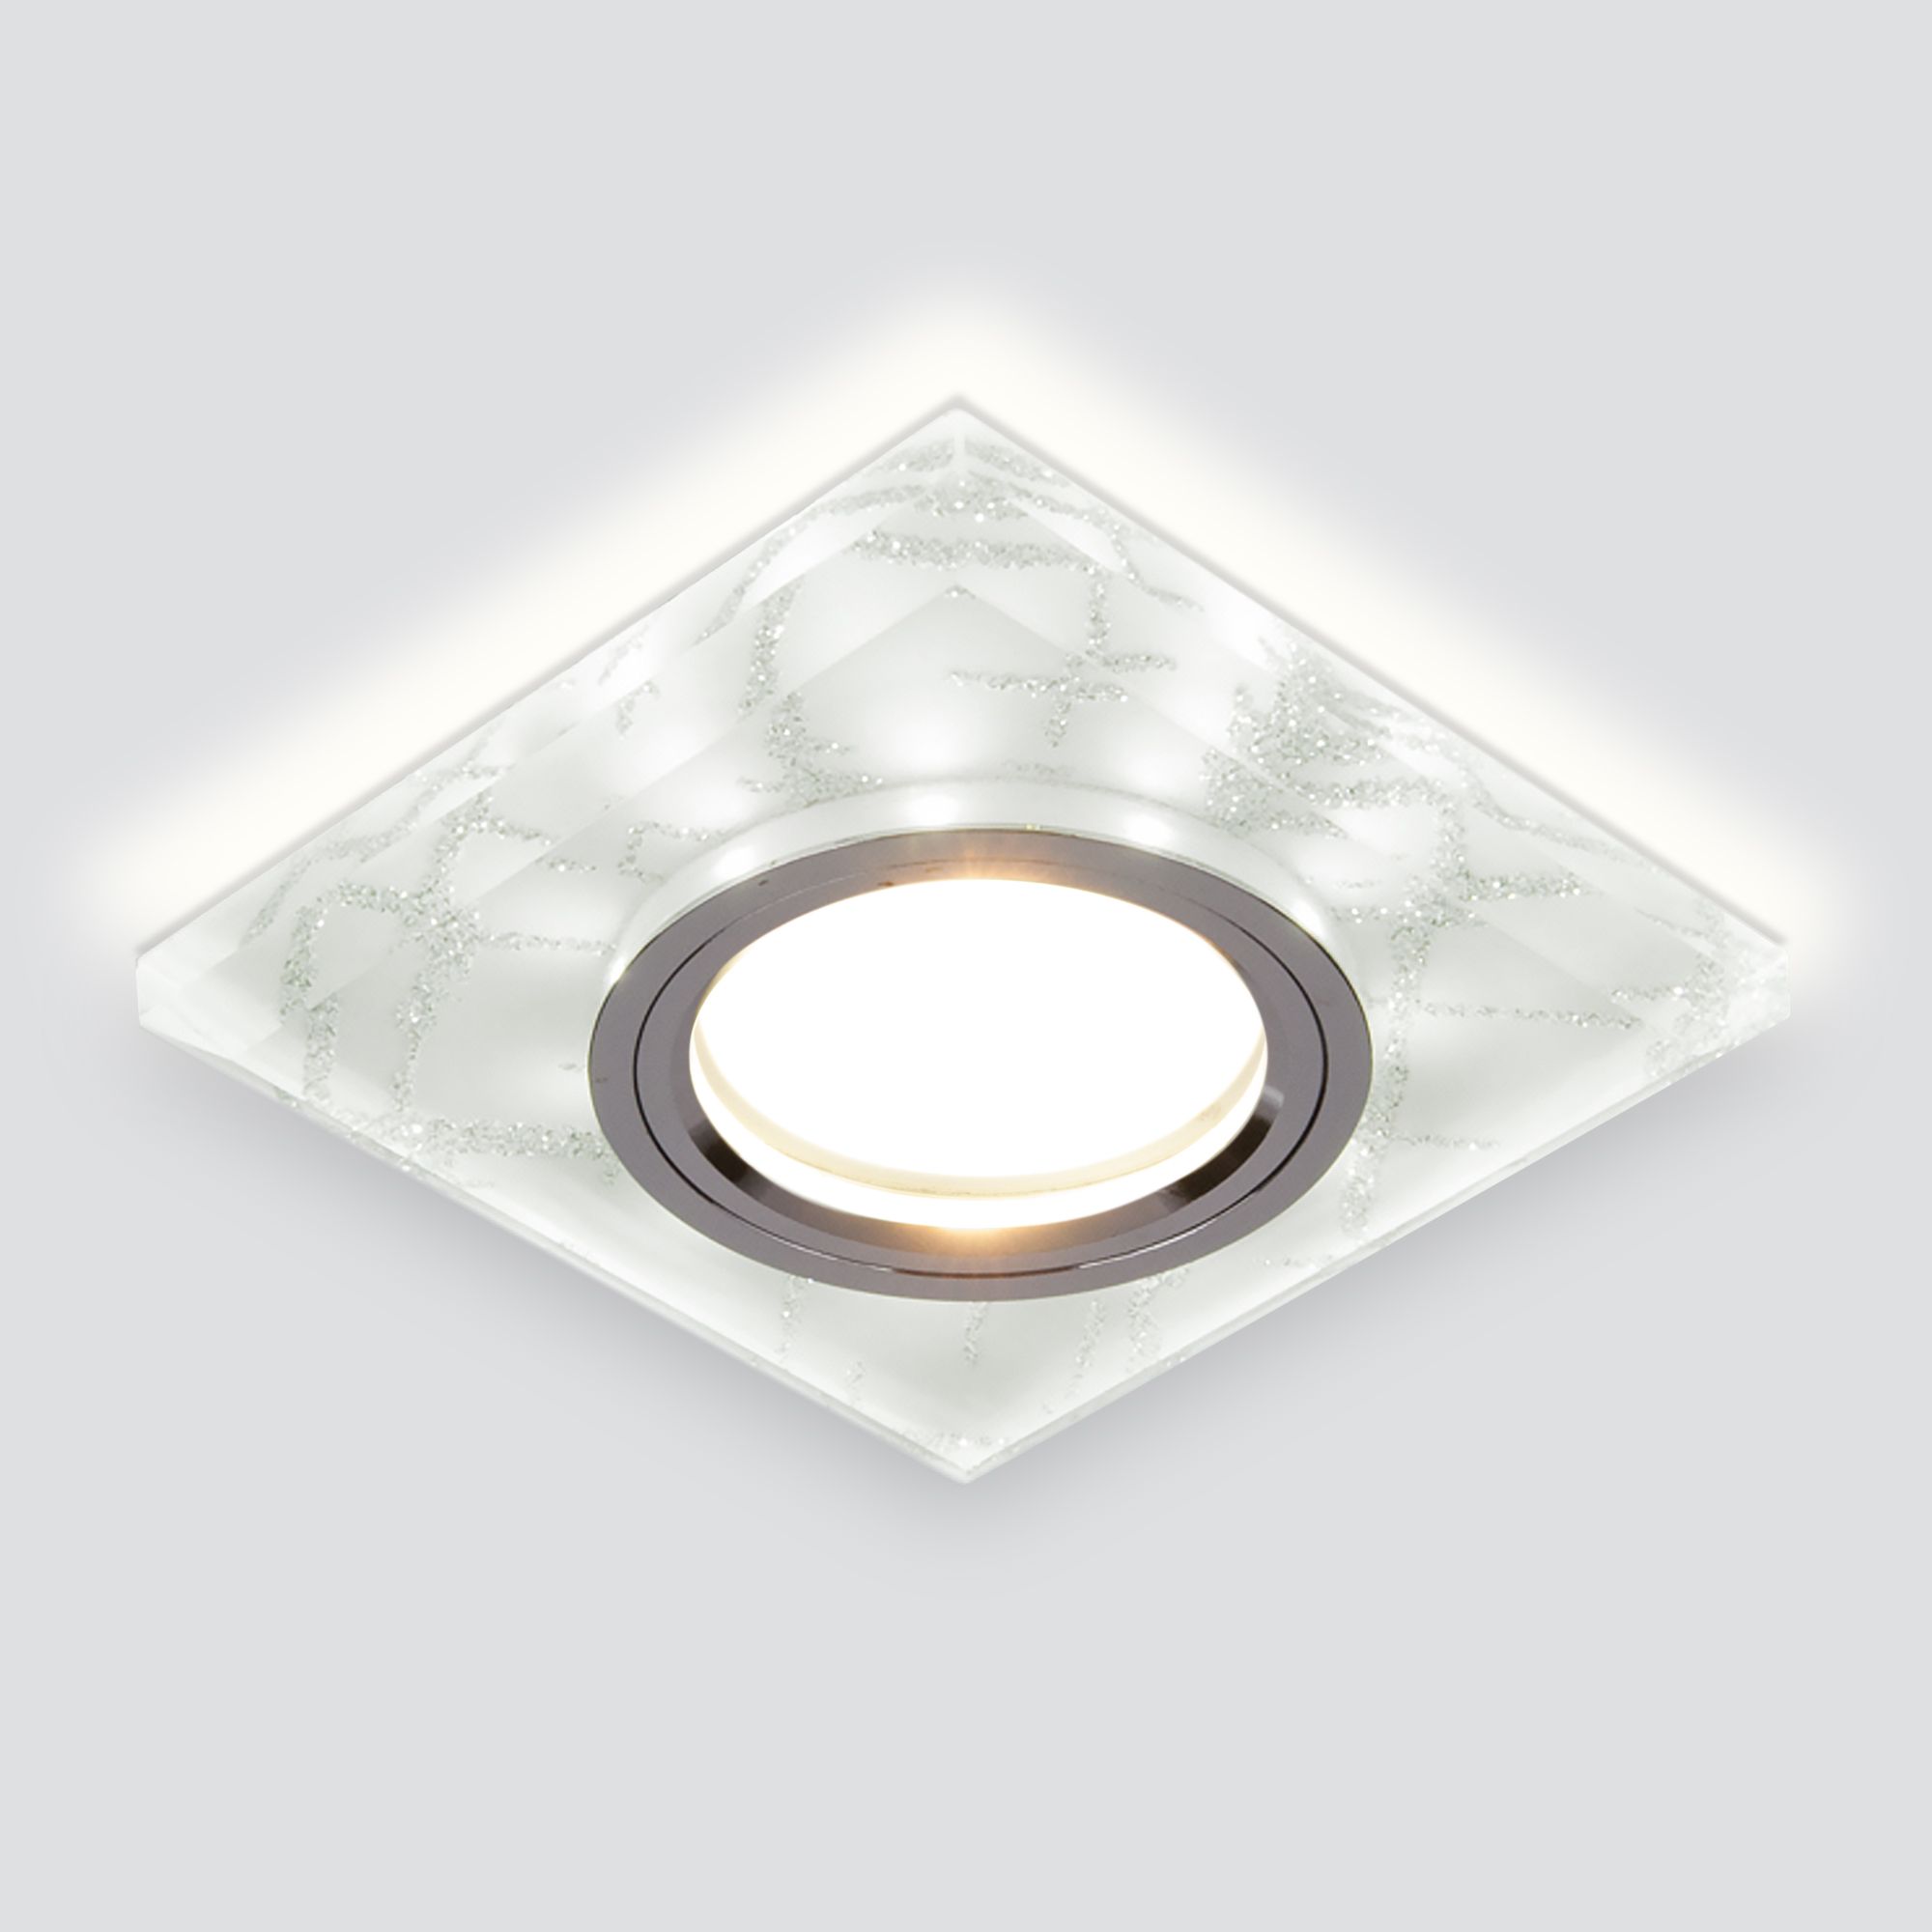 Встраиваемый точечный светильник с подсветкой 8361 MR16 WH/SL белый/серебро